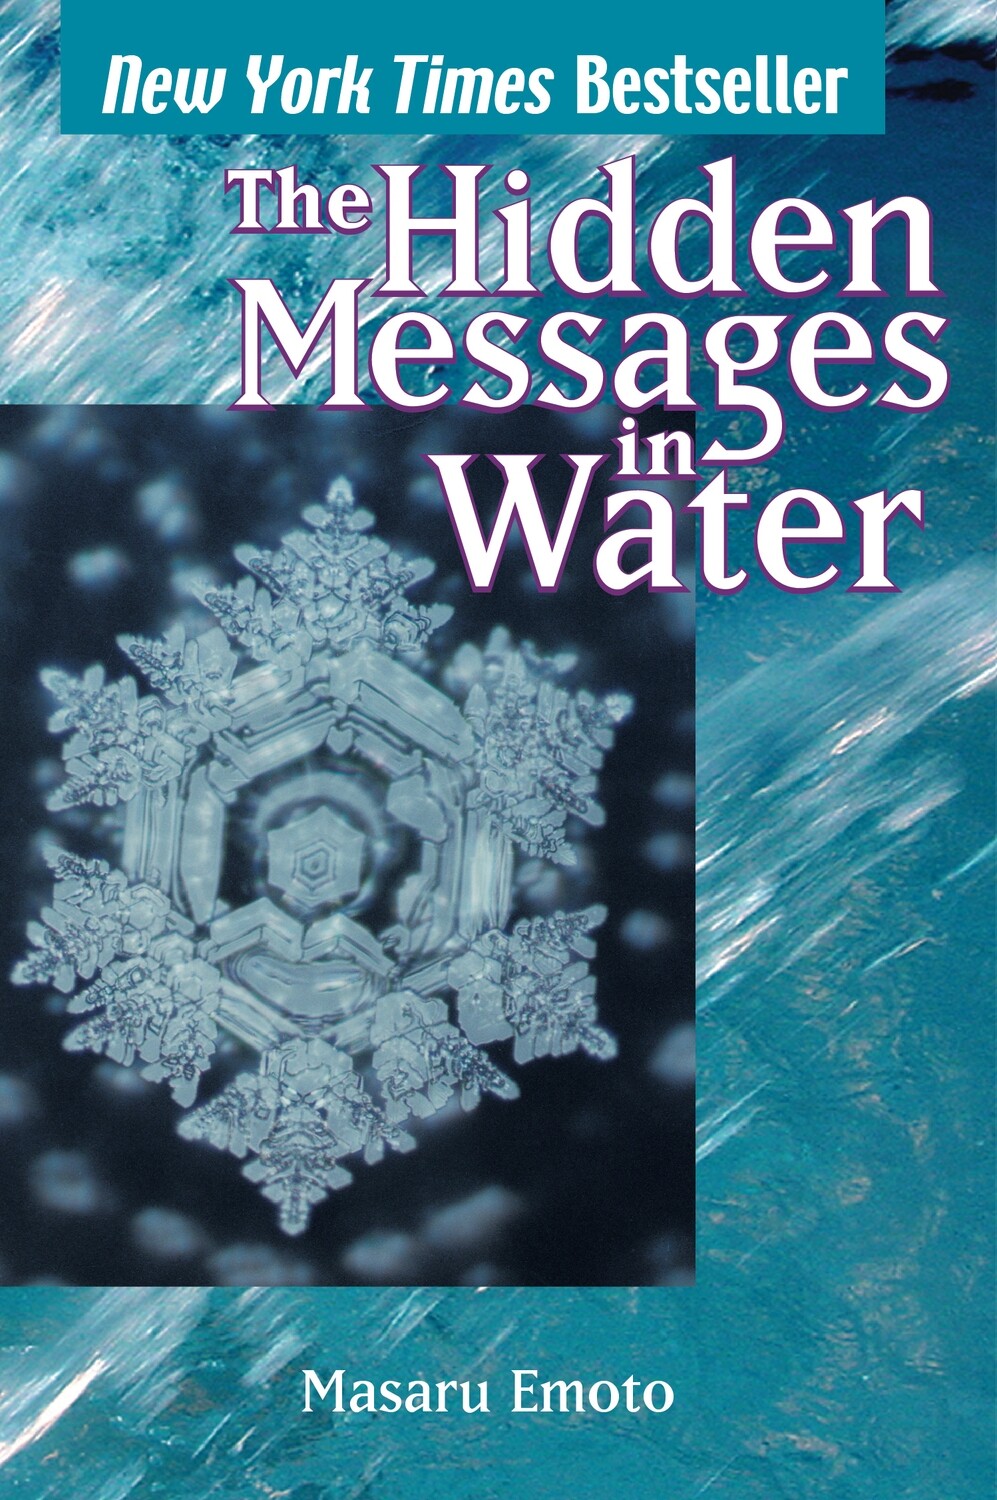 The hidden messages in water* (Emoto)